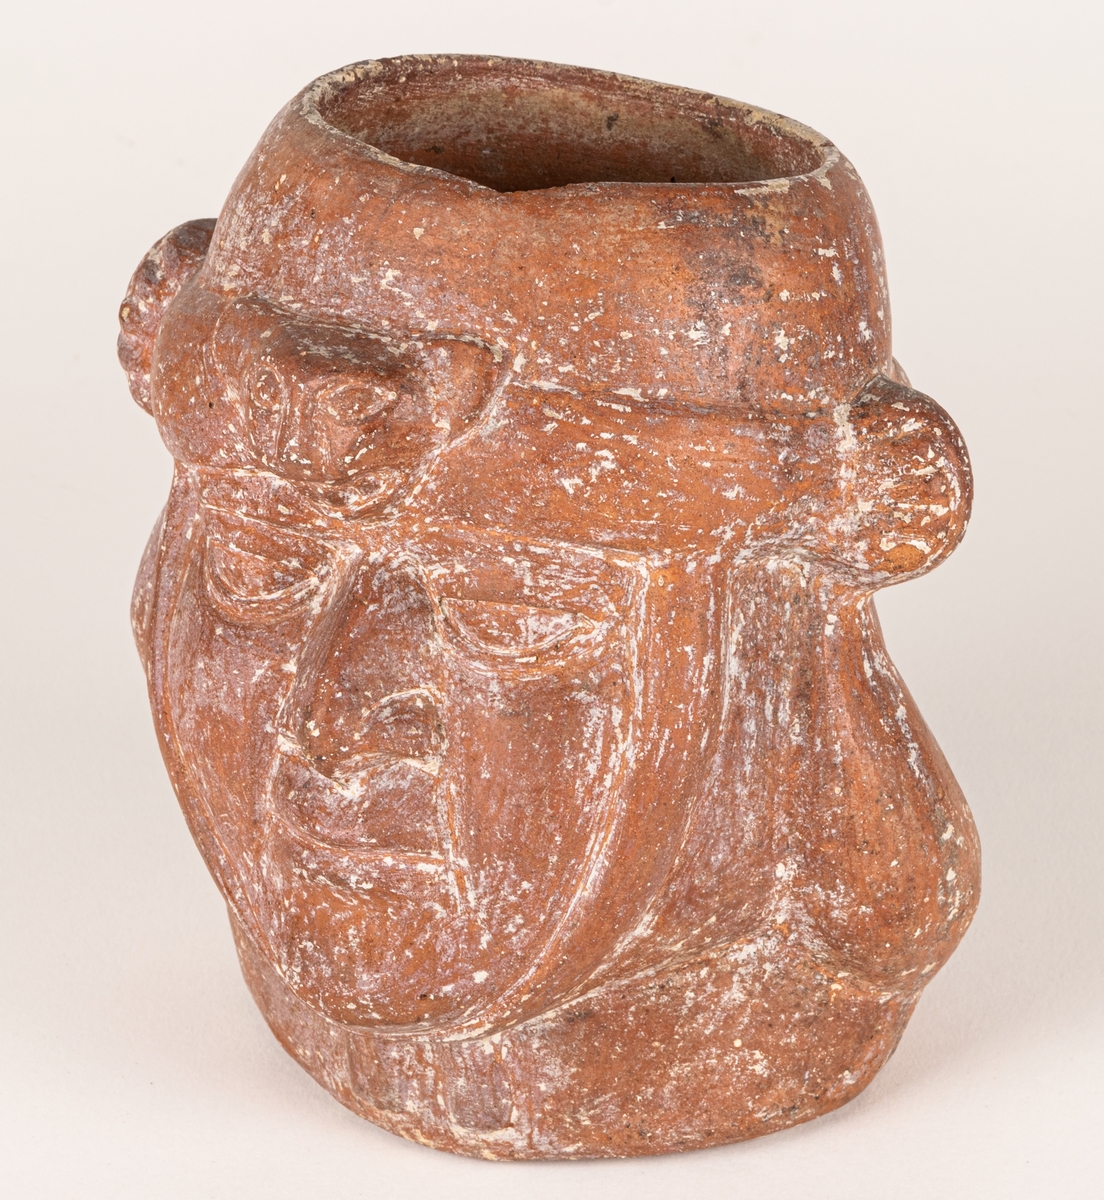 Gravkärl, av rödbrun lera med kraftig relief i form av ett ansikte. Ova öppning upptil. Inkaiskt gravkärl.